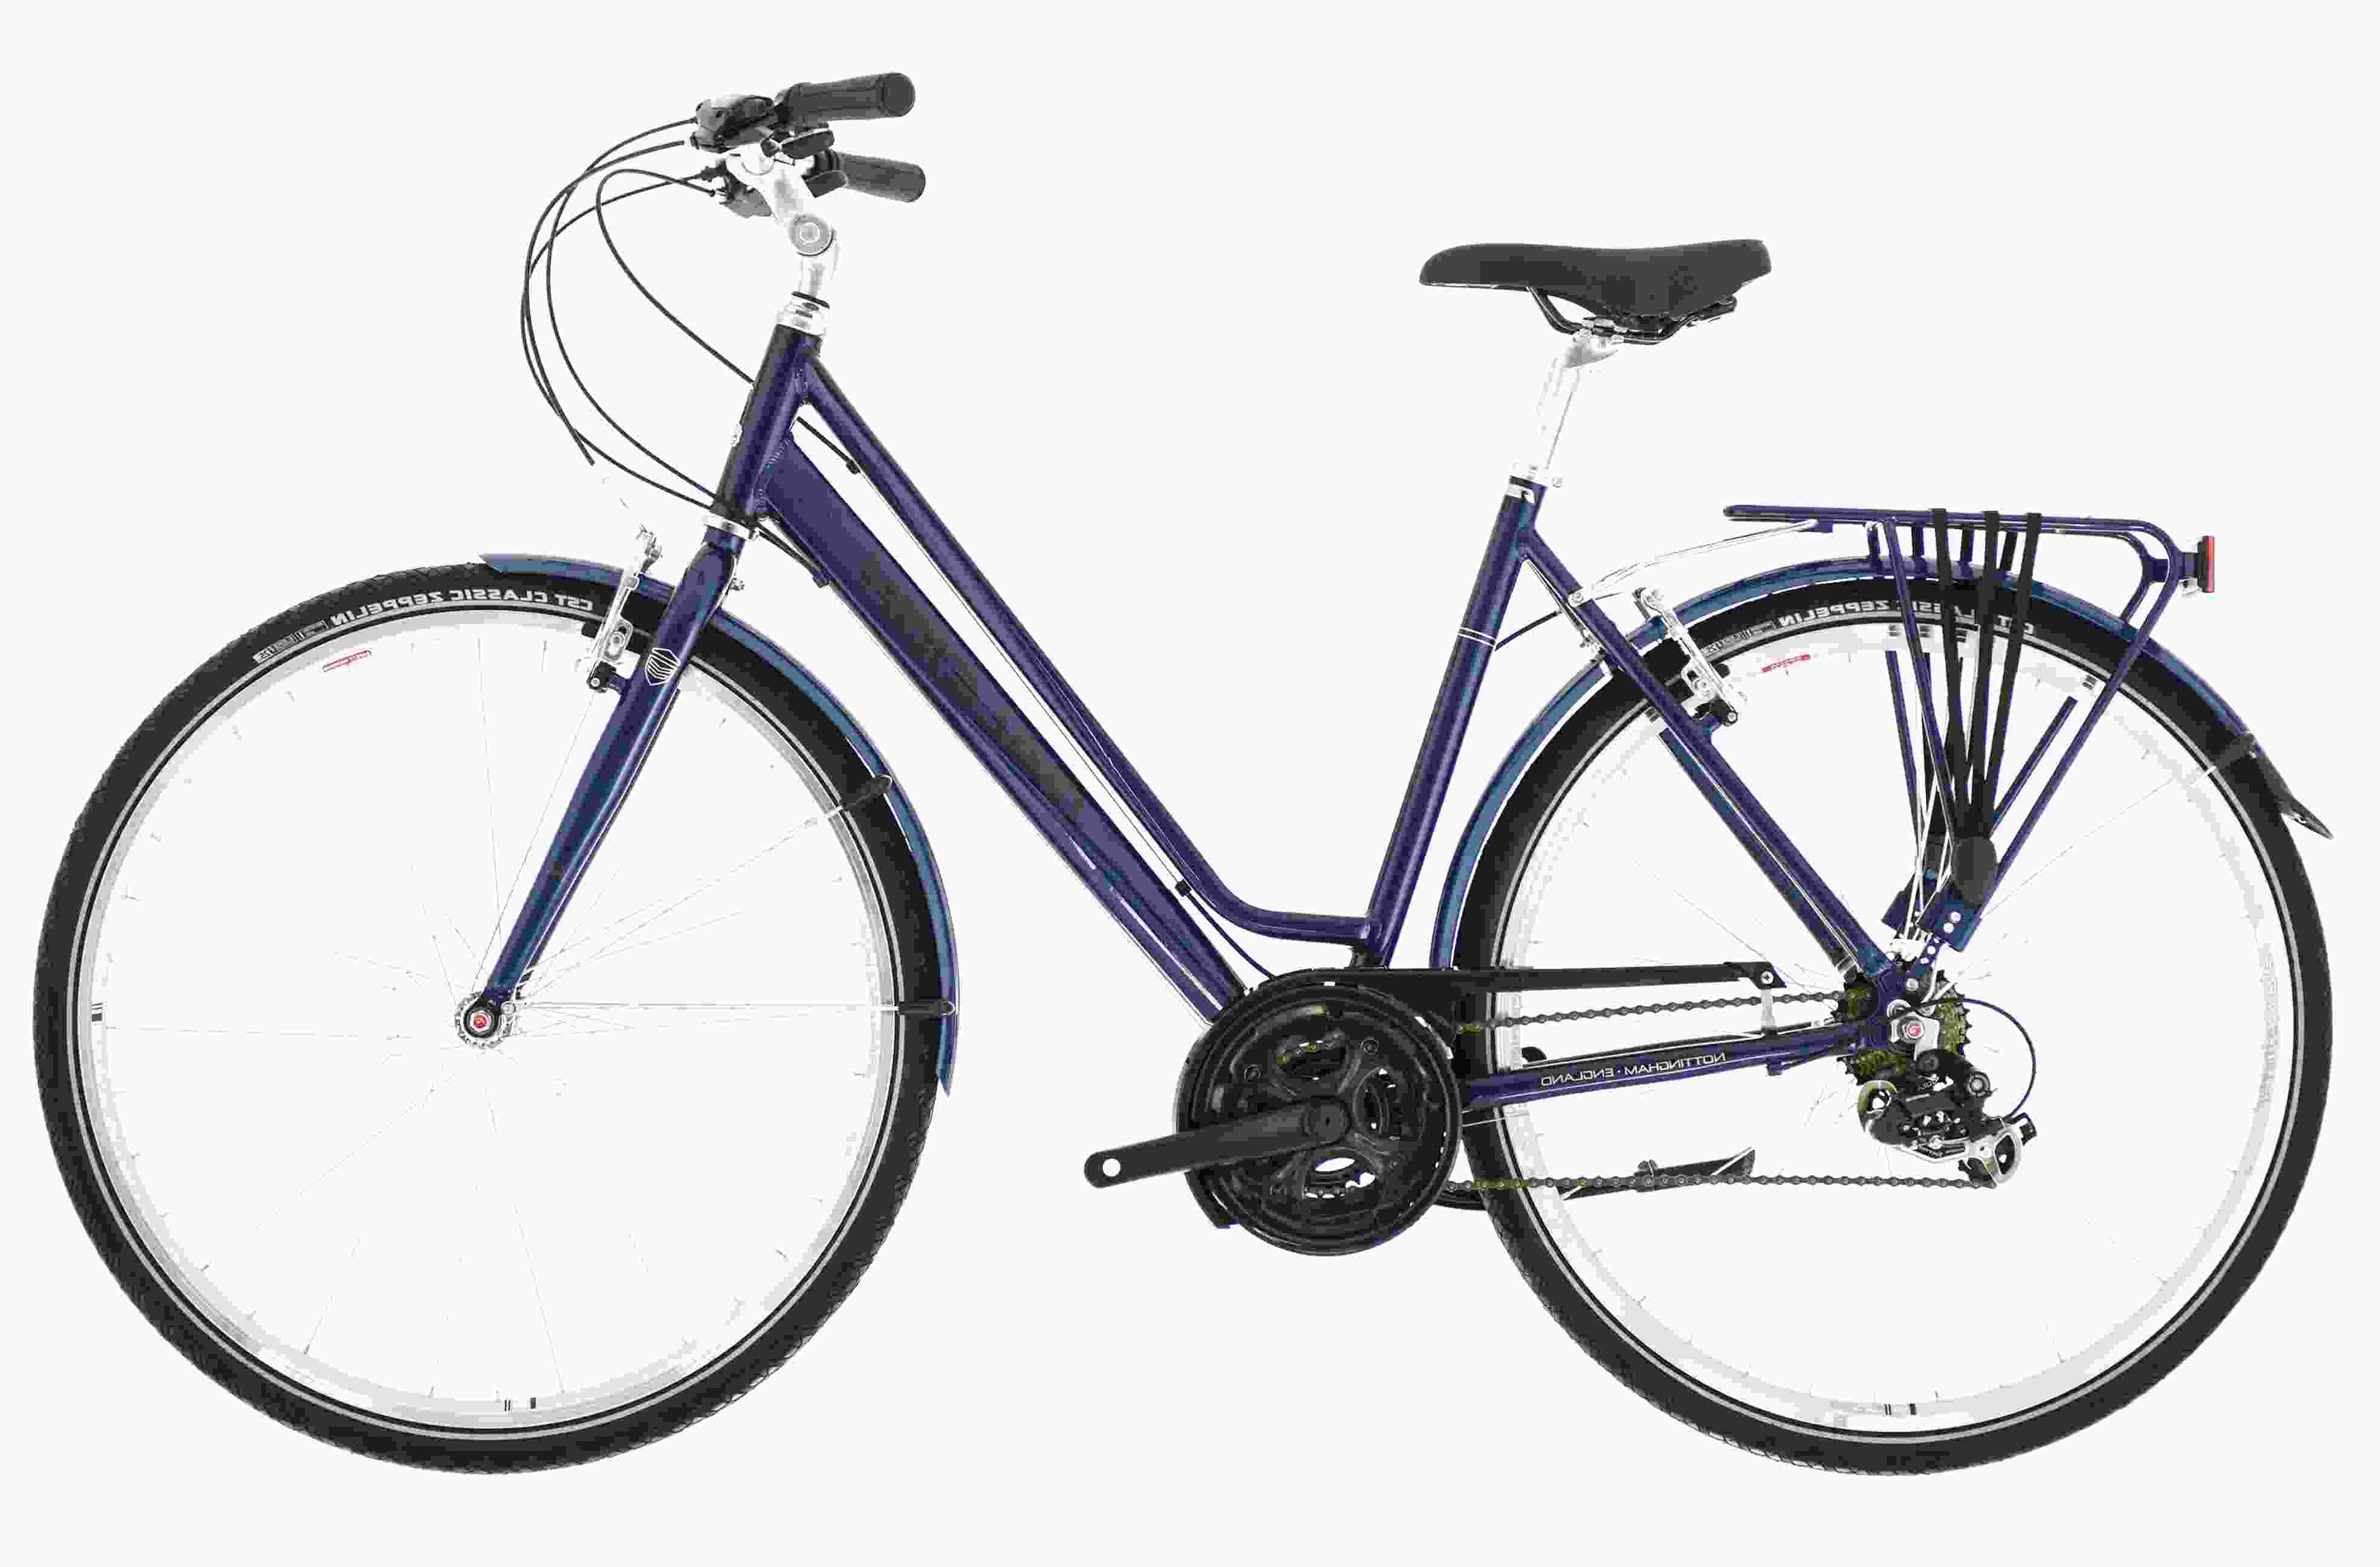 Ladies Raleigh Pioneer Bike for sale in UK | View 32 ads